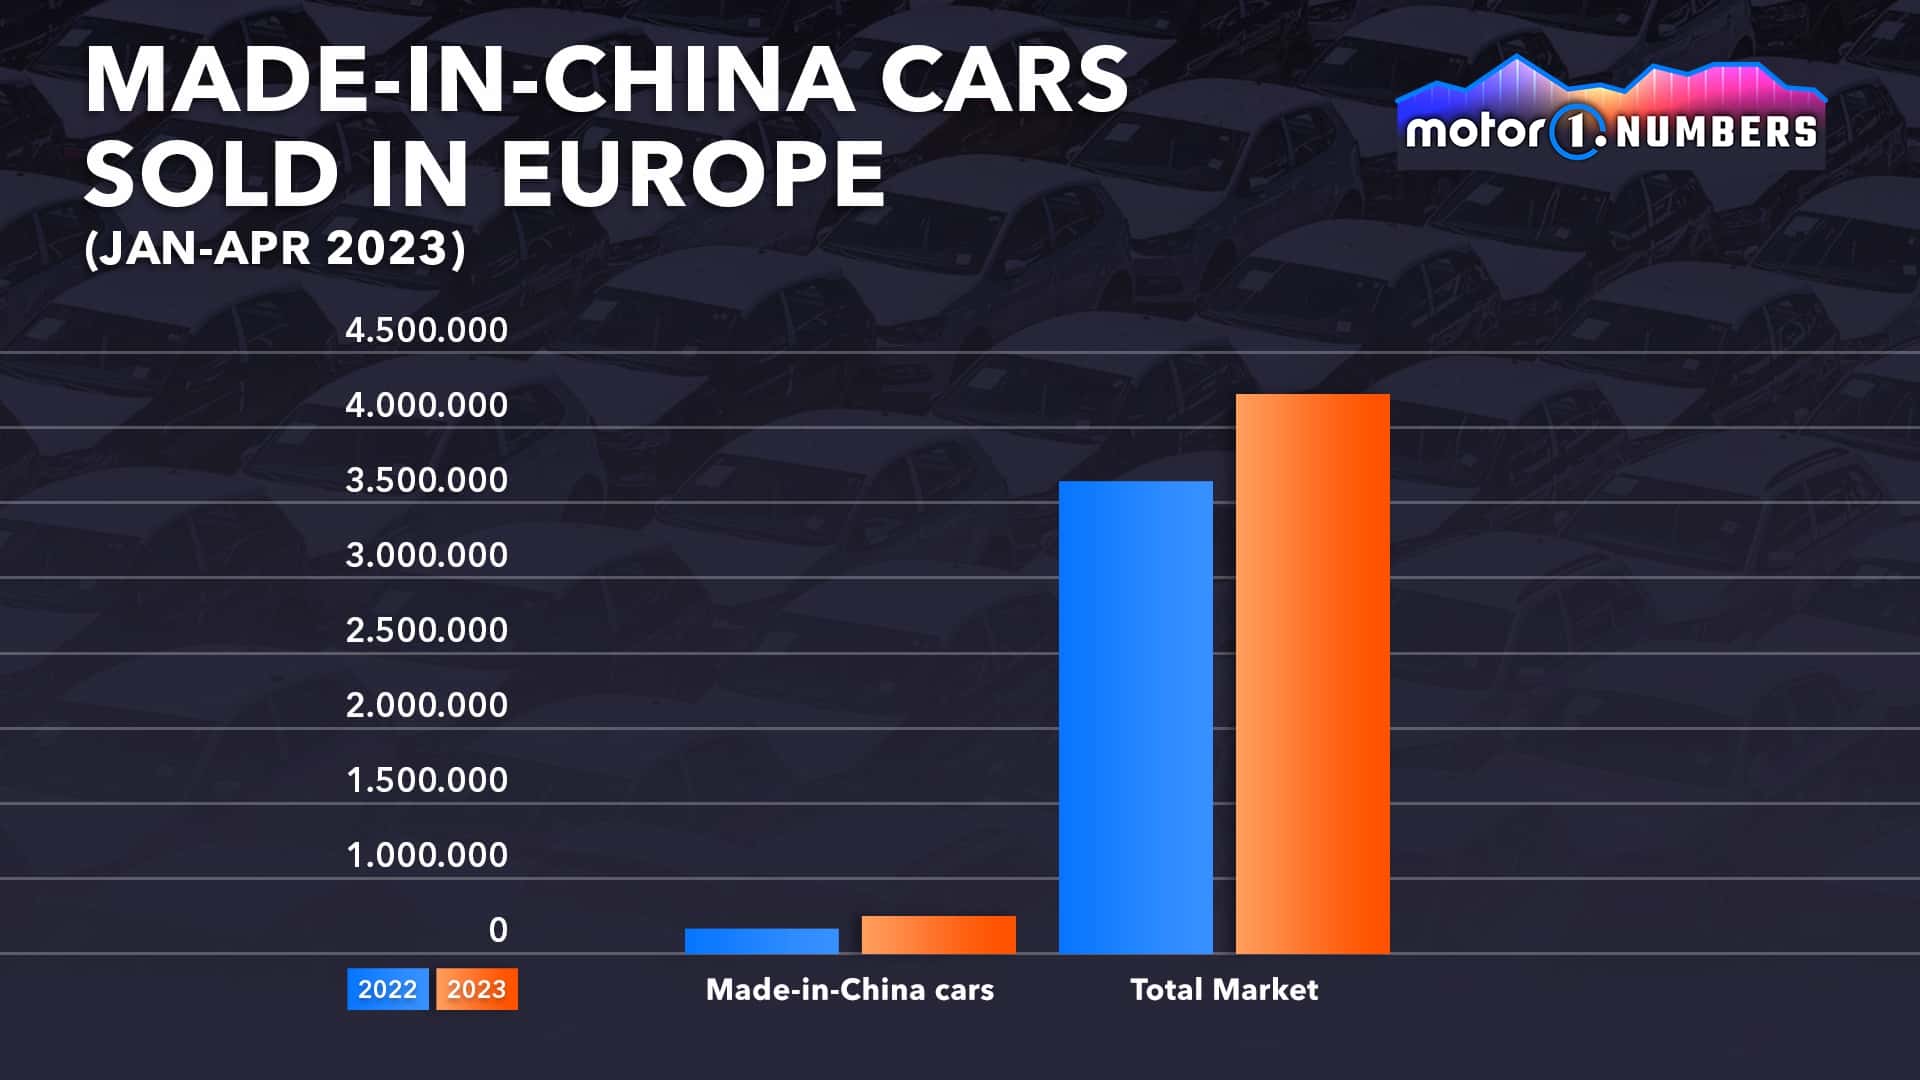 Lượng xe Trung Quốc đã bán tại thị trường châu Âu từ tháng 1 - tháng 4 năm 2023